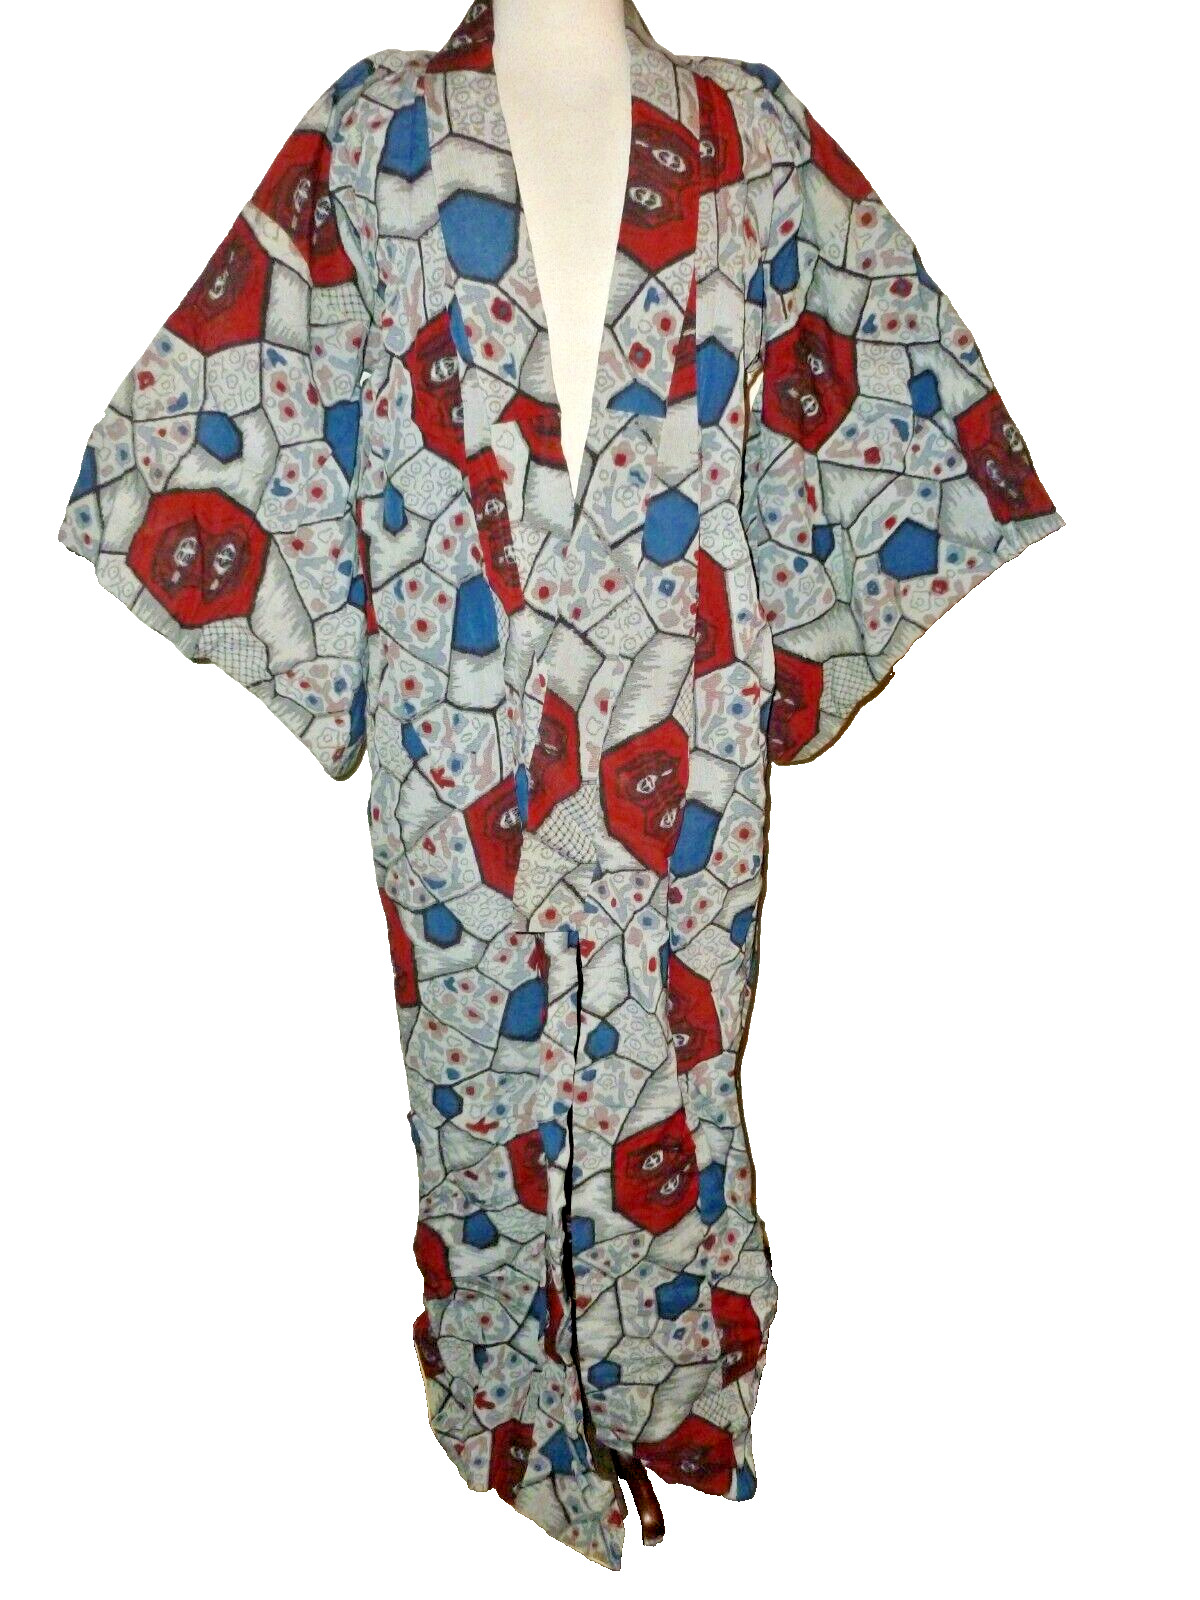 Vintage Kimono Robe Unique Old Cloth Textile Tapestry S Small